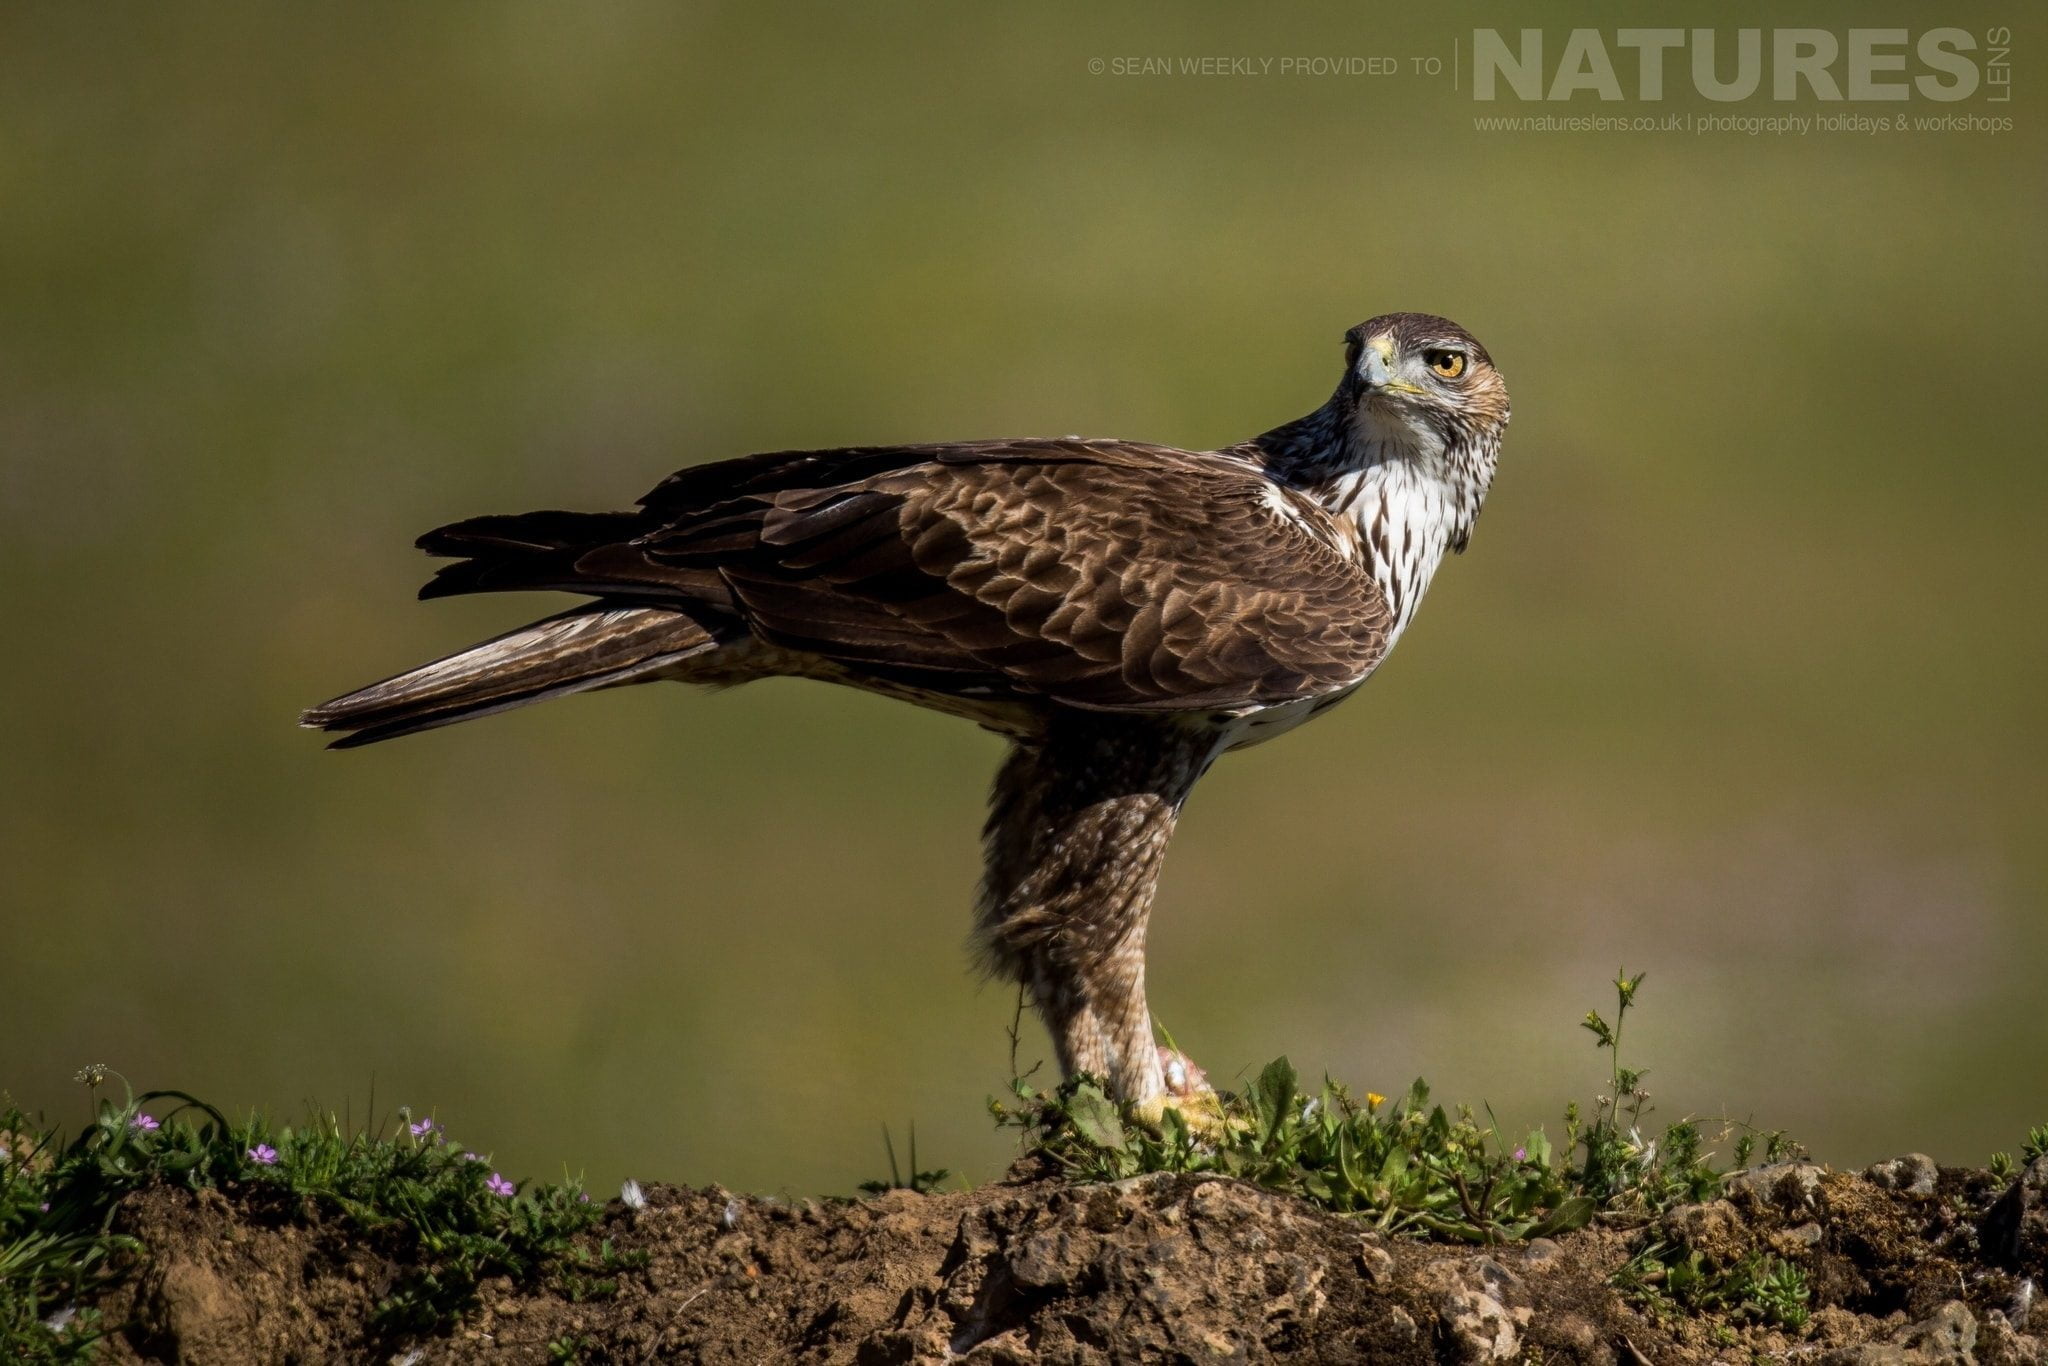 A Bonellis Eagle of the Sierra Morena region of Spain image captured during the NaturesLens Golden Eagles Raptors of Spain Photography Holiday